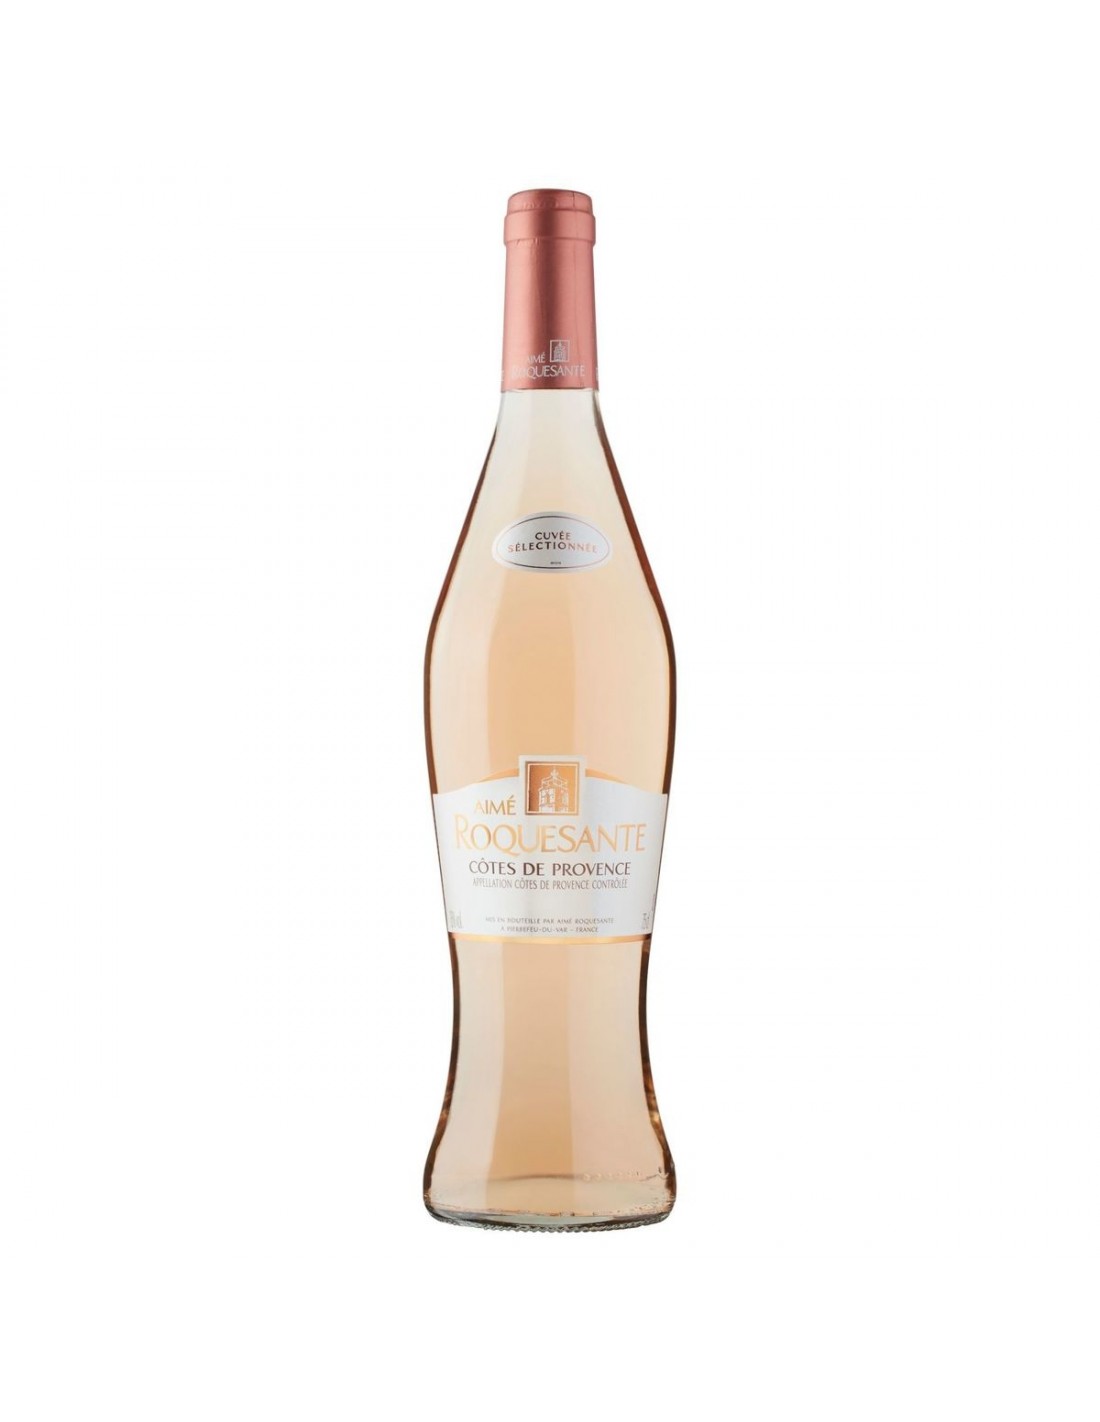 Vin roze, Cotes De Provence Aime Roquesante, 12.5% alc., 0.75L, Franta